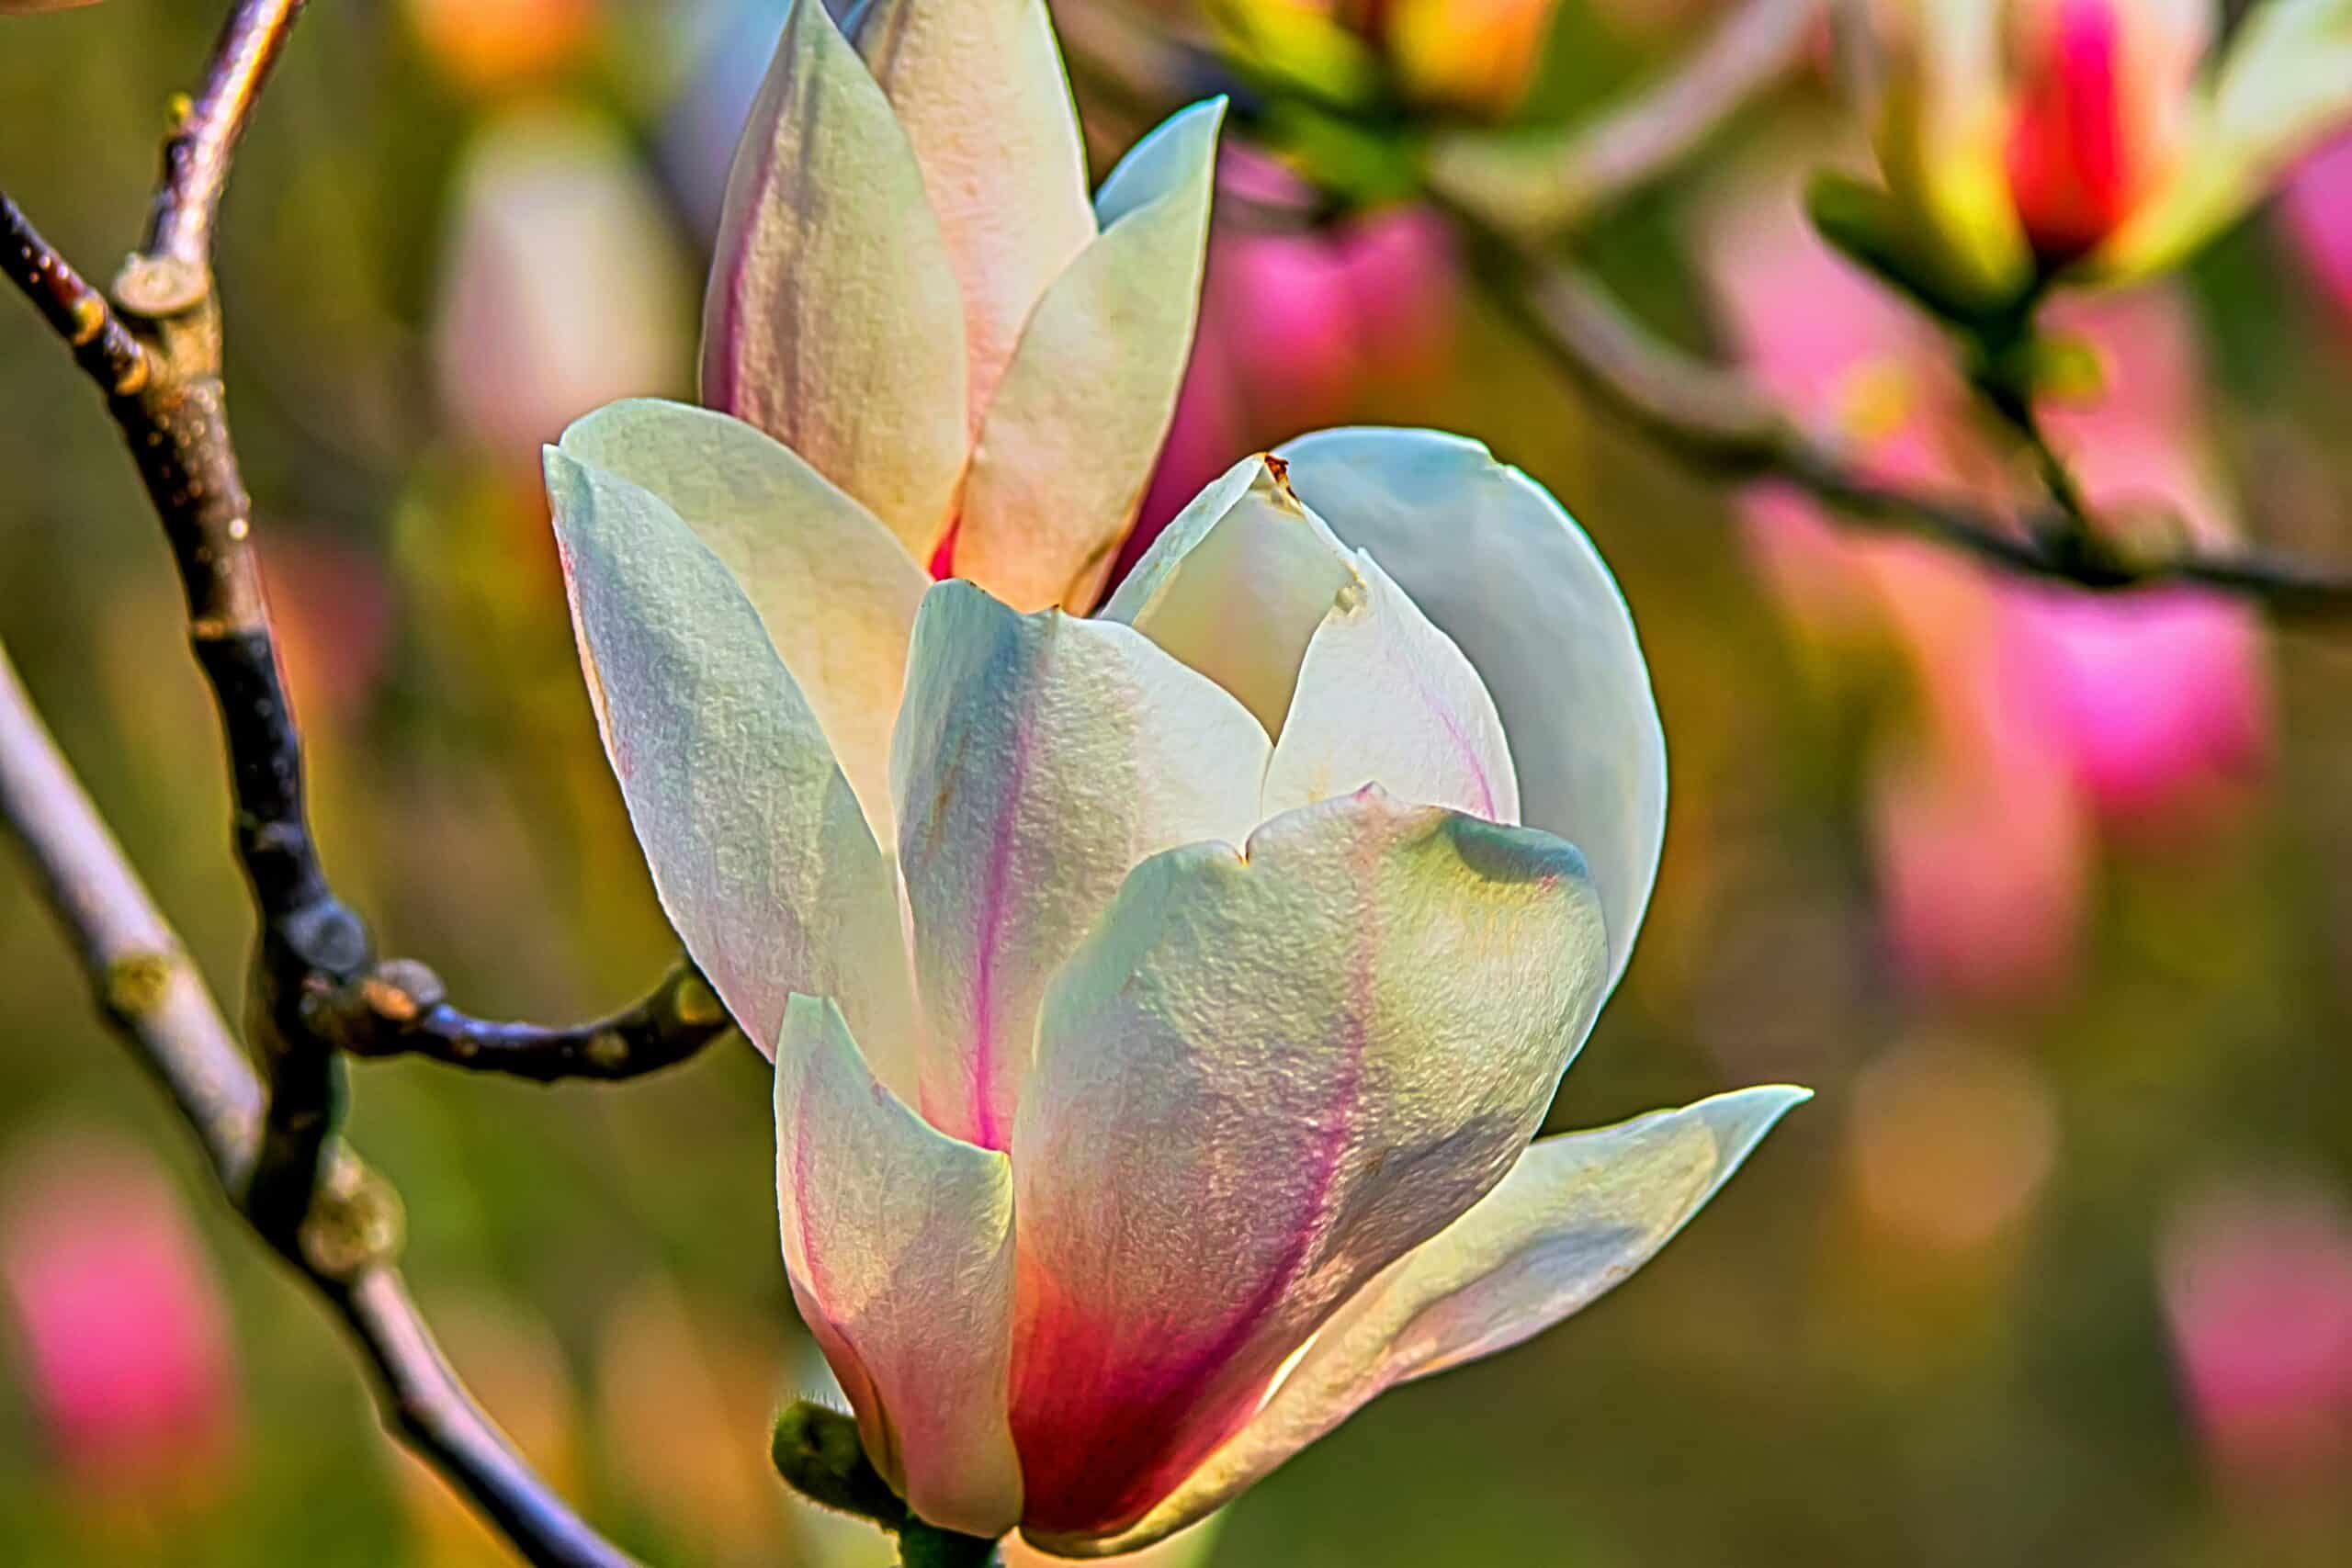 見事な花と印象的な背丈を持つマグノリアの木の美しさを発見してください。これらの象徴的な花木のさまざまな品種、植栽のヒント、手入れのテクニックについて学びましょう。